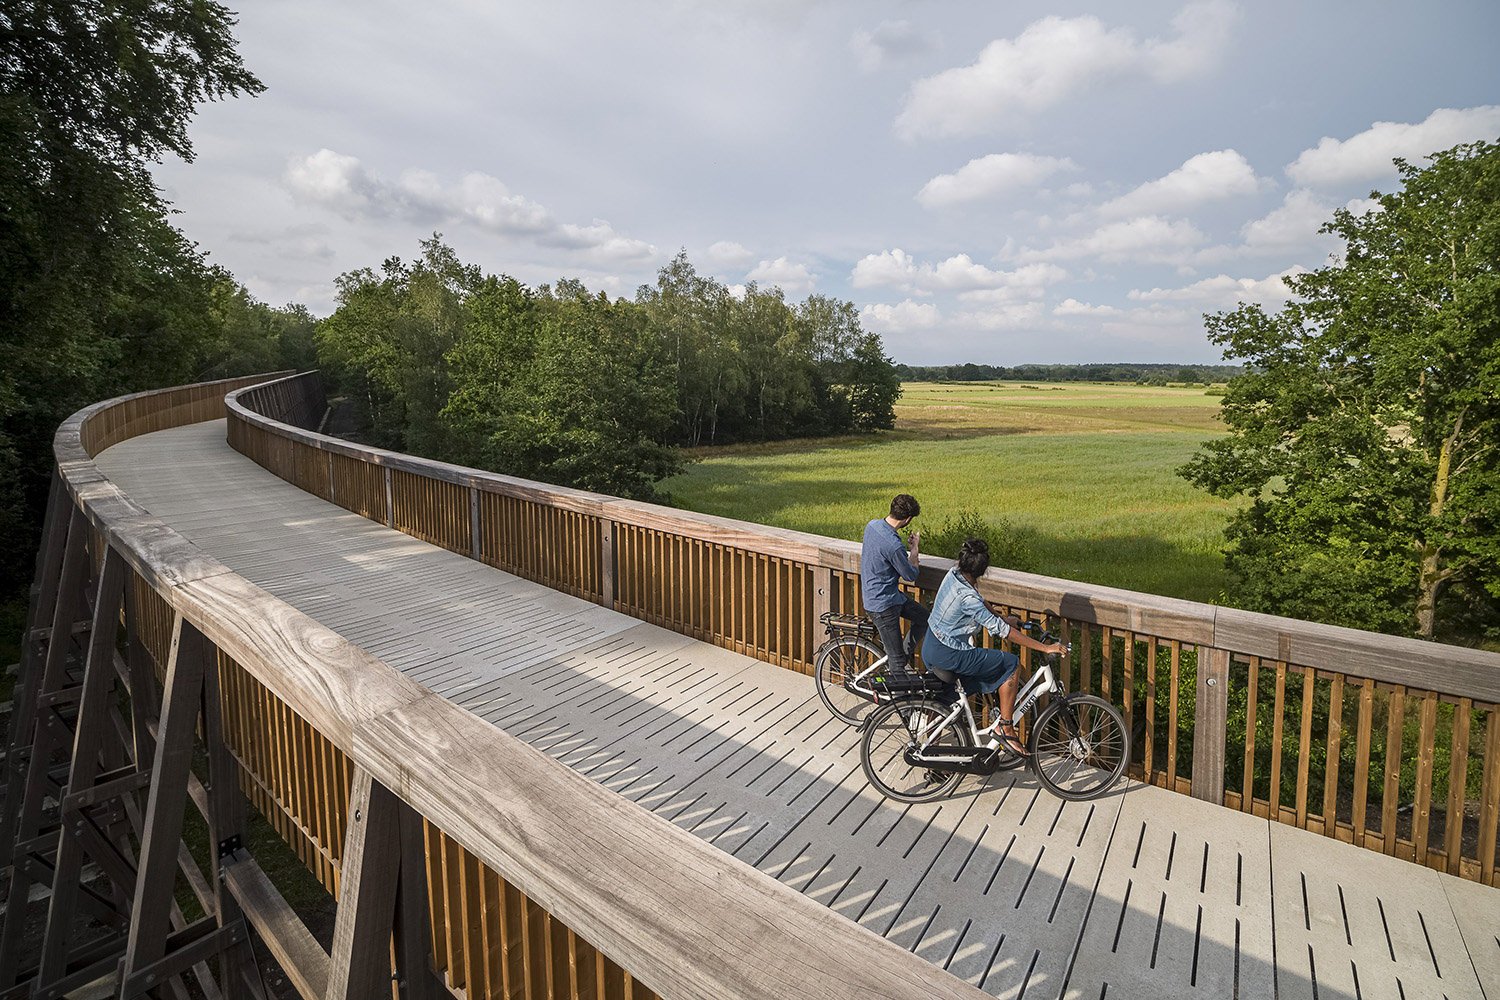 The bridge design offers a unique view on the surrounding nature. | Frank Resseler / Visit Limburg